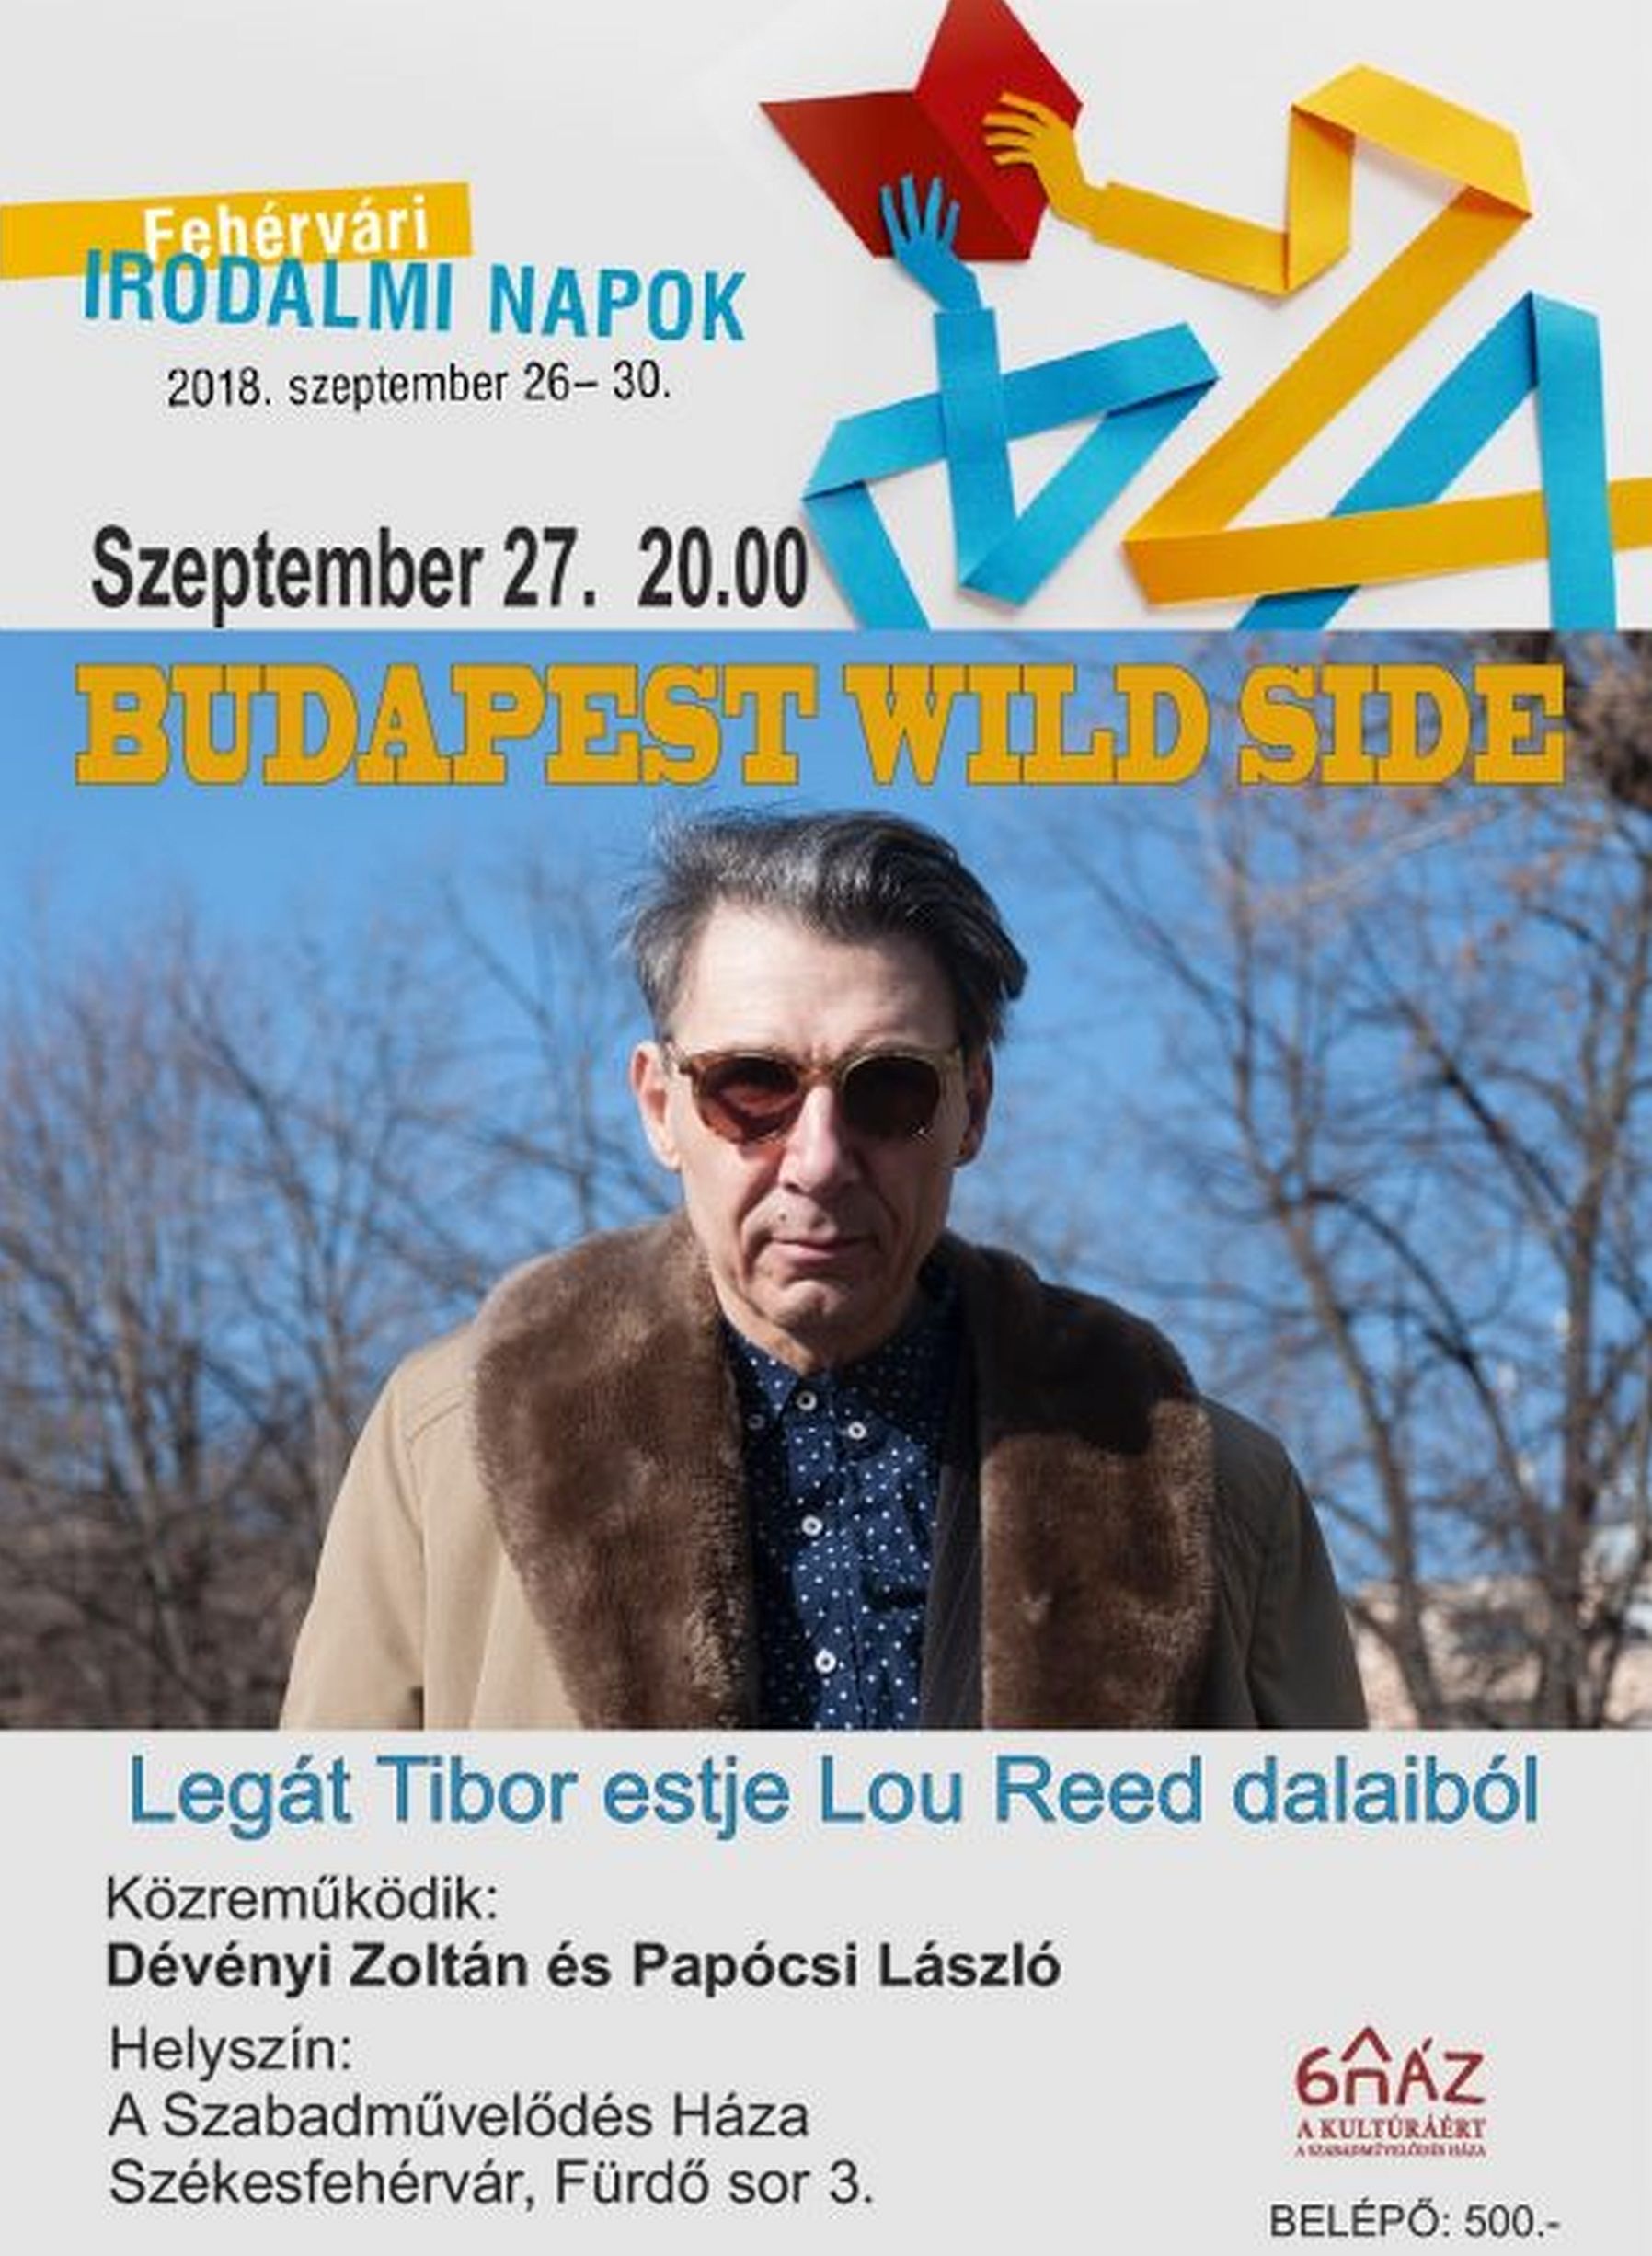 Legát Tibor estje Lou Reed dalaiból A Szabadművelődés Házában